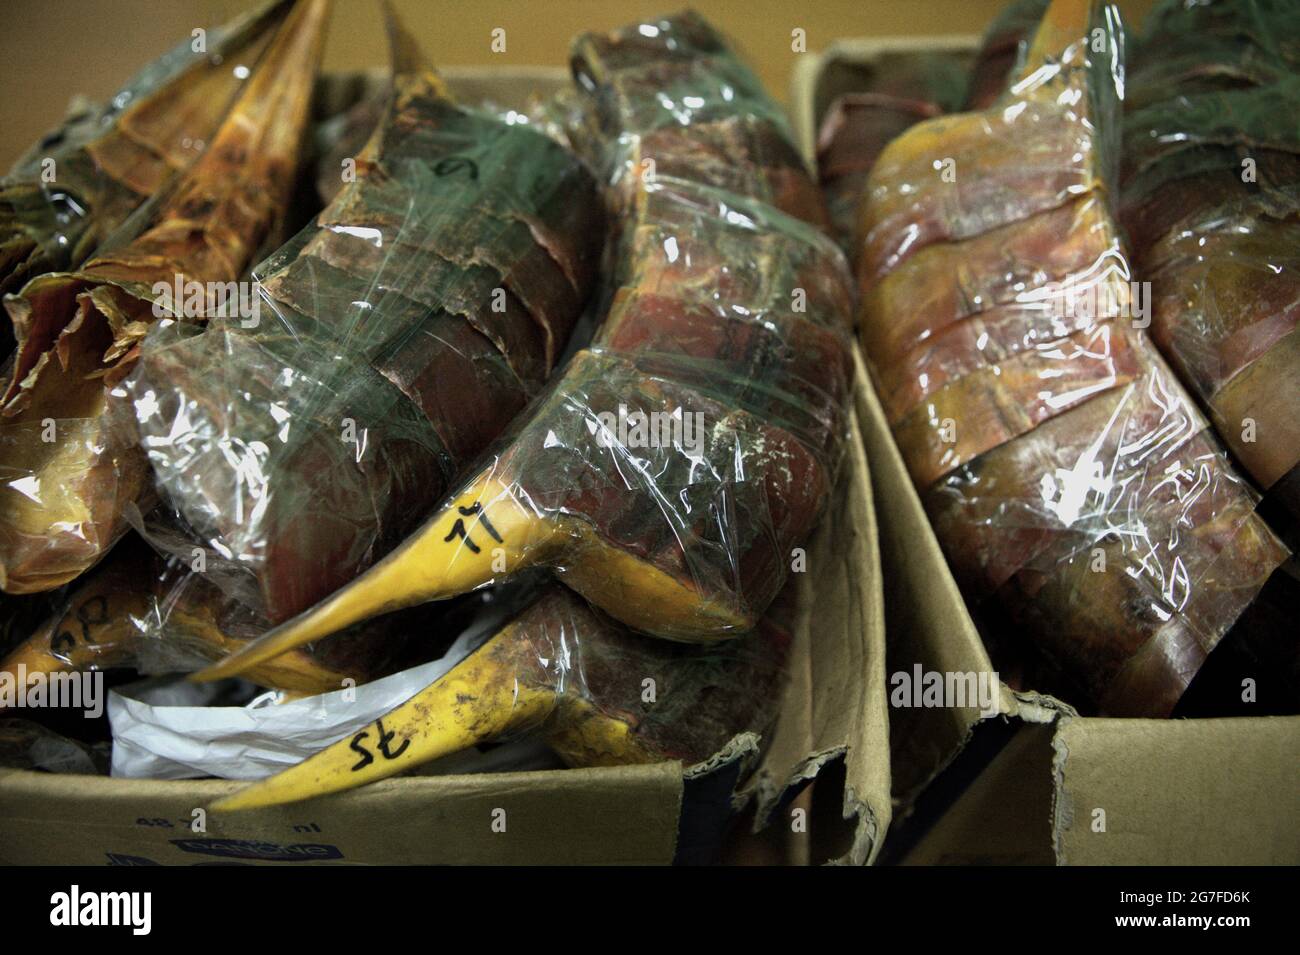 Giacarta, Indonesia. 1 luglio 2013. Becco di orrore sequestrate per essere contrabbandati in Cina dall'aeroporto internazionale Soekarno-Hatta di Giacarta. Fotografato presso l'ufficio della Nature Conservation Agency (BKSDA) di Giacarta. Foto Stock